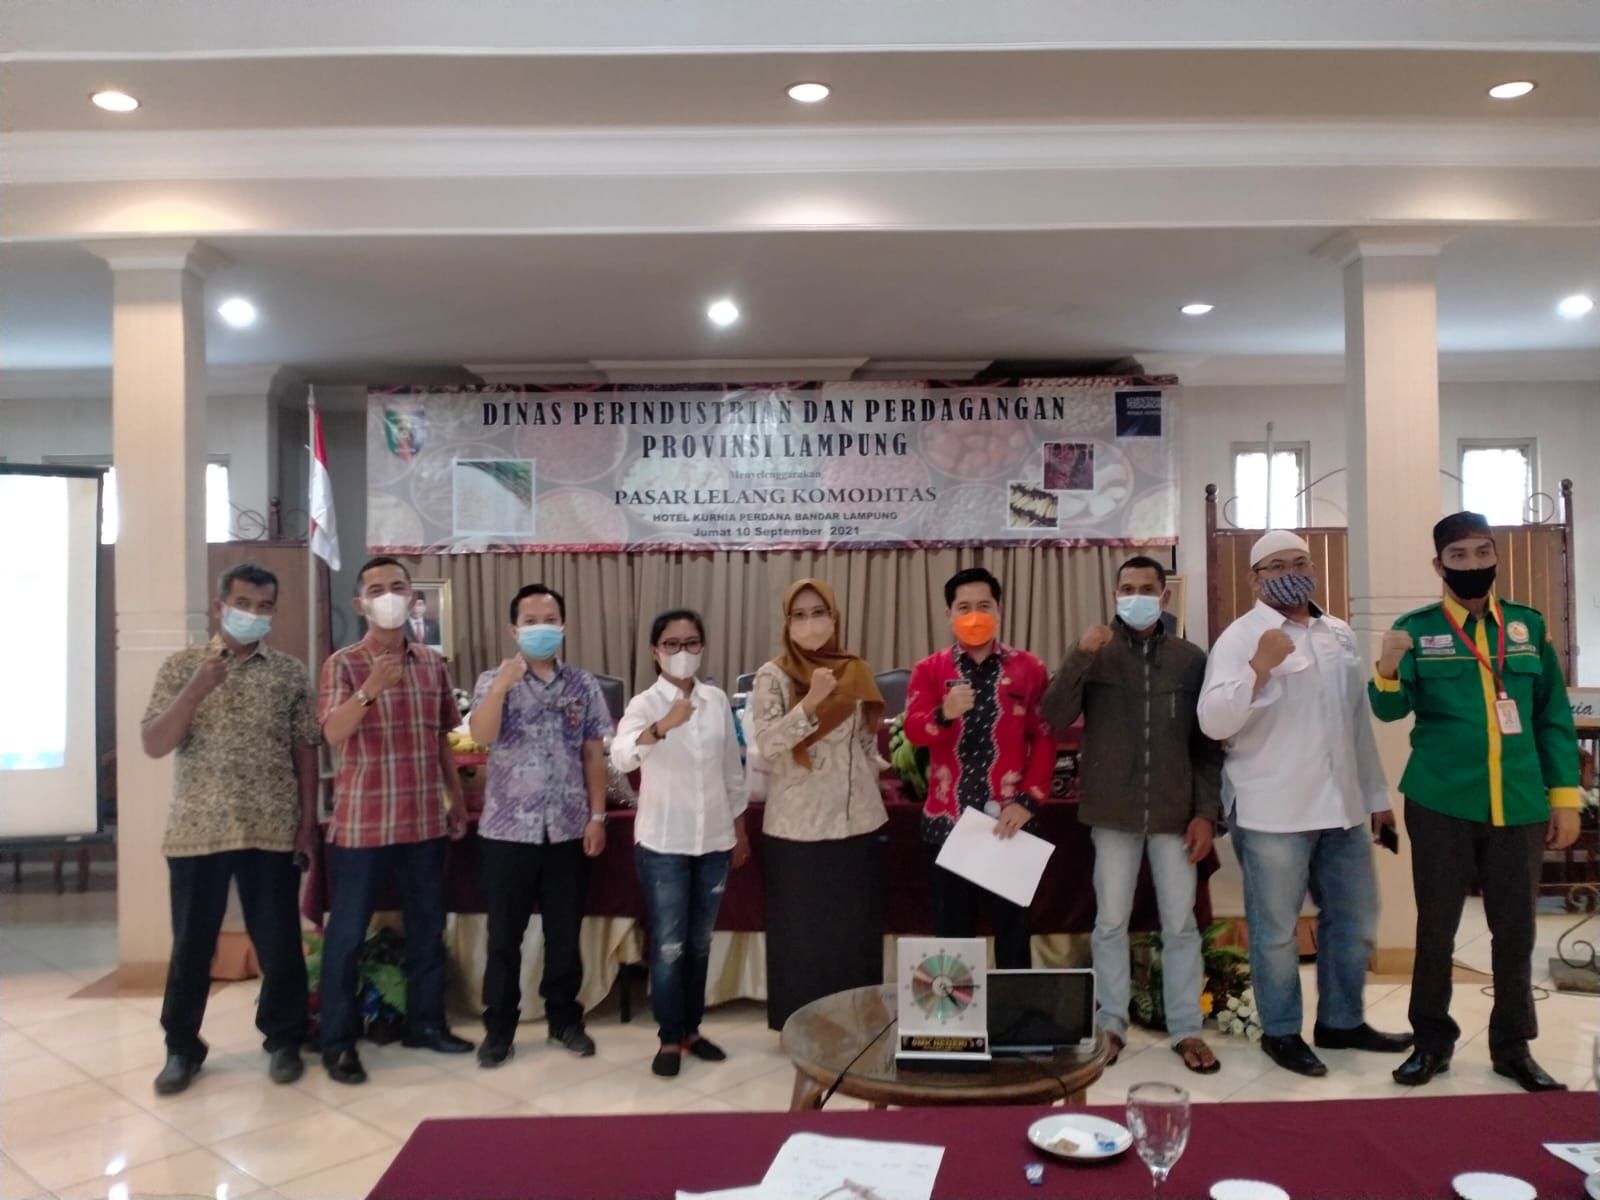 Permudah Petani Mengakses Pasar, Pemprov Lampung Gelar Pasar Lelang Komoditas